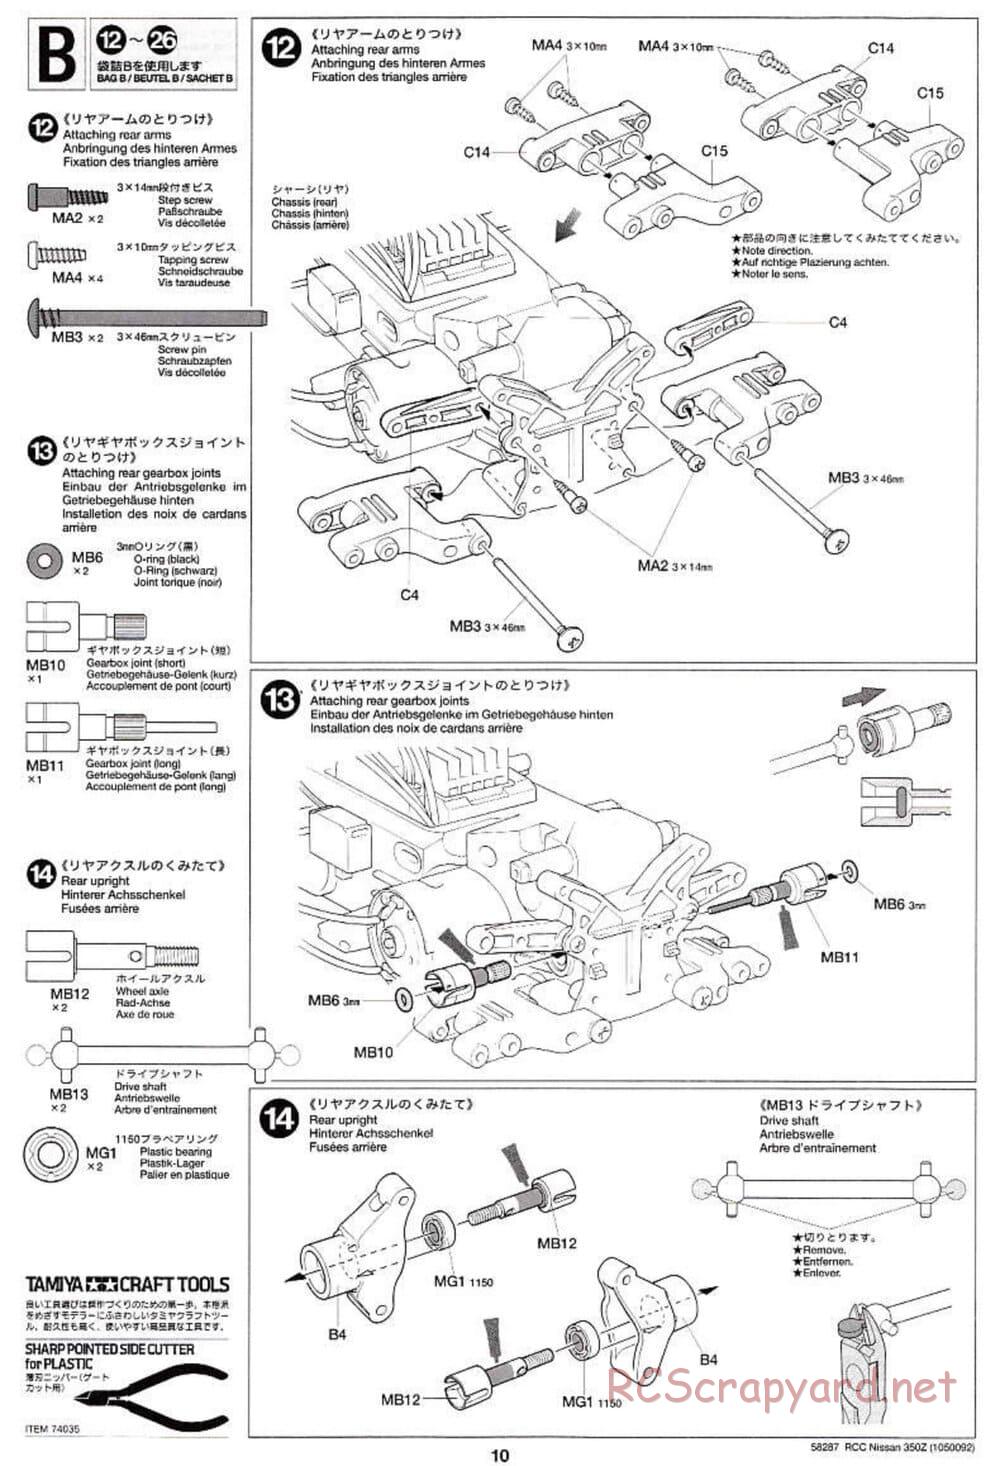 Tamiya - Nissan 350Z - TL-01 Chassis - Manual - Page 10